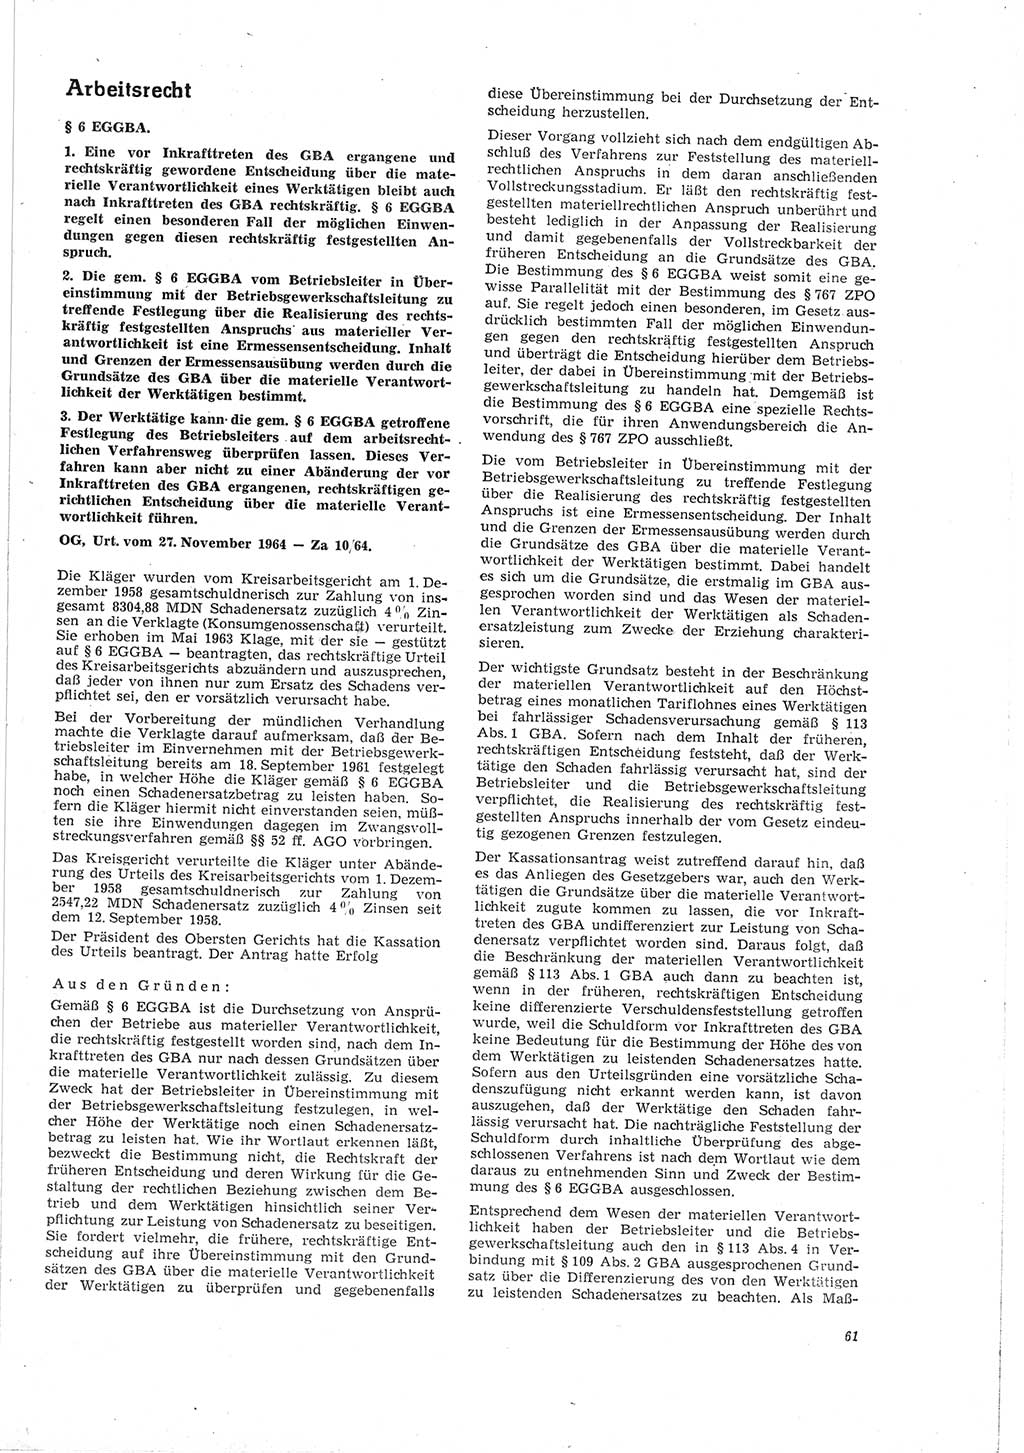 Neue Justiz (NJ), Zeitschrift für Recht und Rechtswissenschaft [Deutsche Demokratische Republik (DDR)], 19. Jahrgang 1965, Seite 61 (NJ DDR 1965, S. 61)